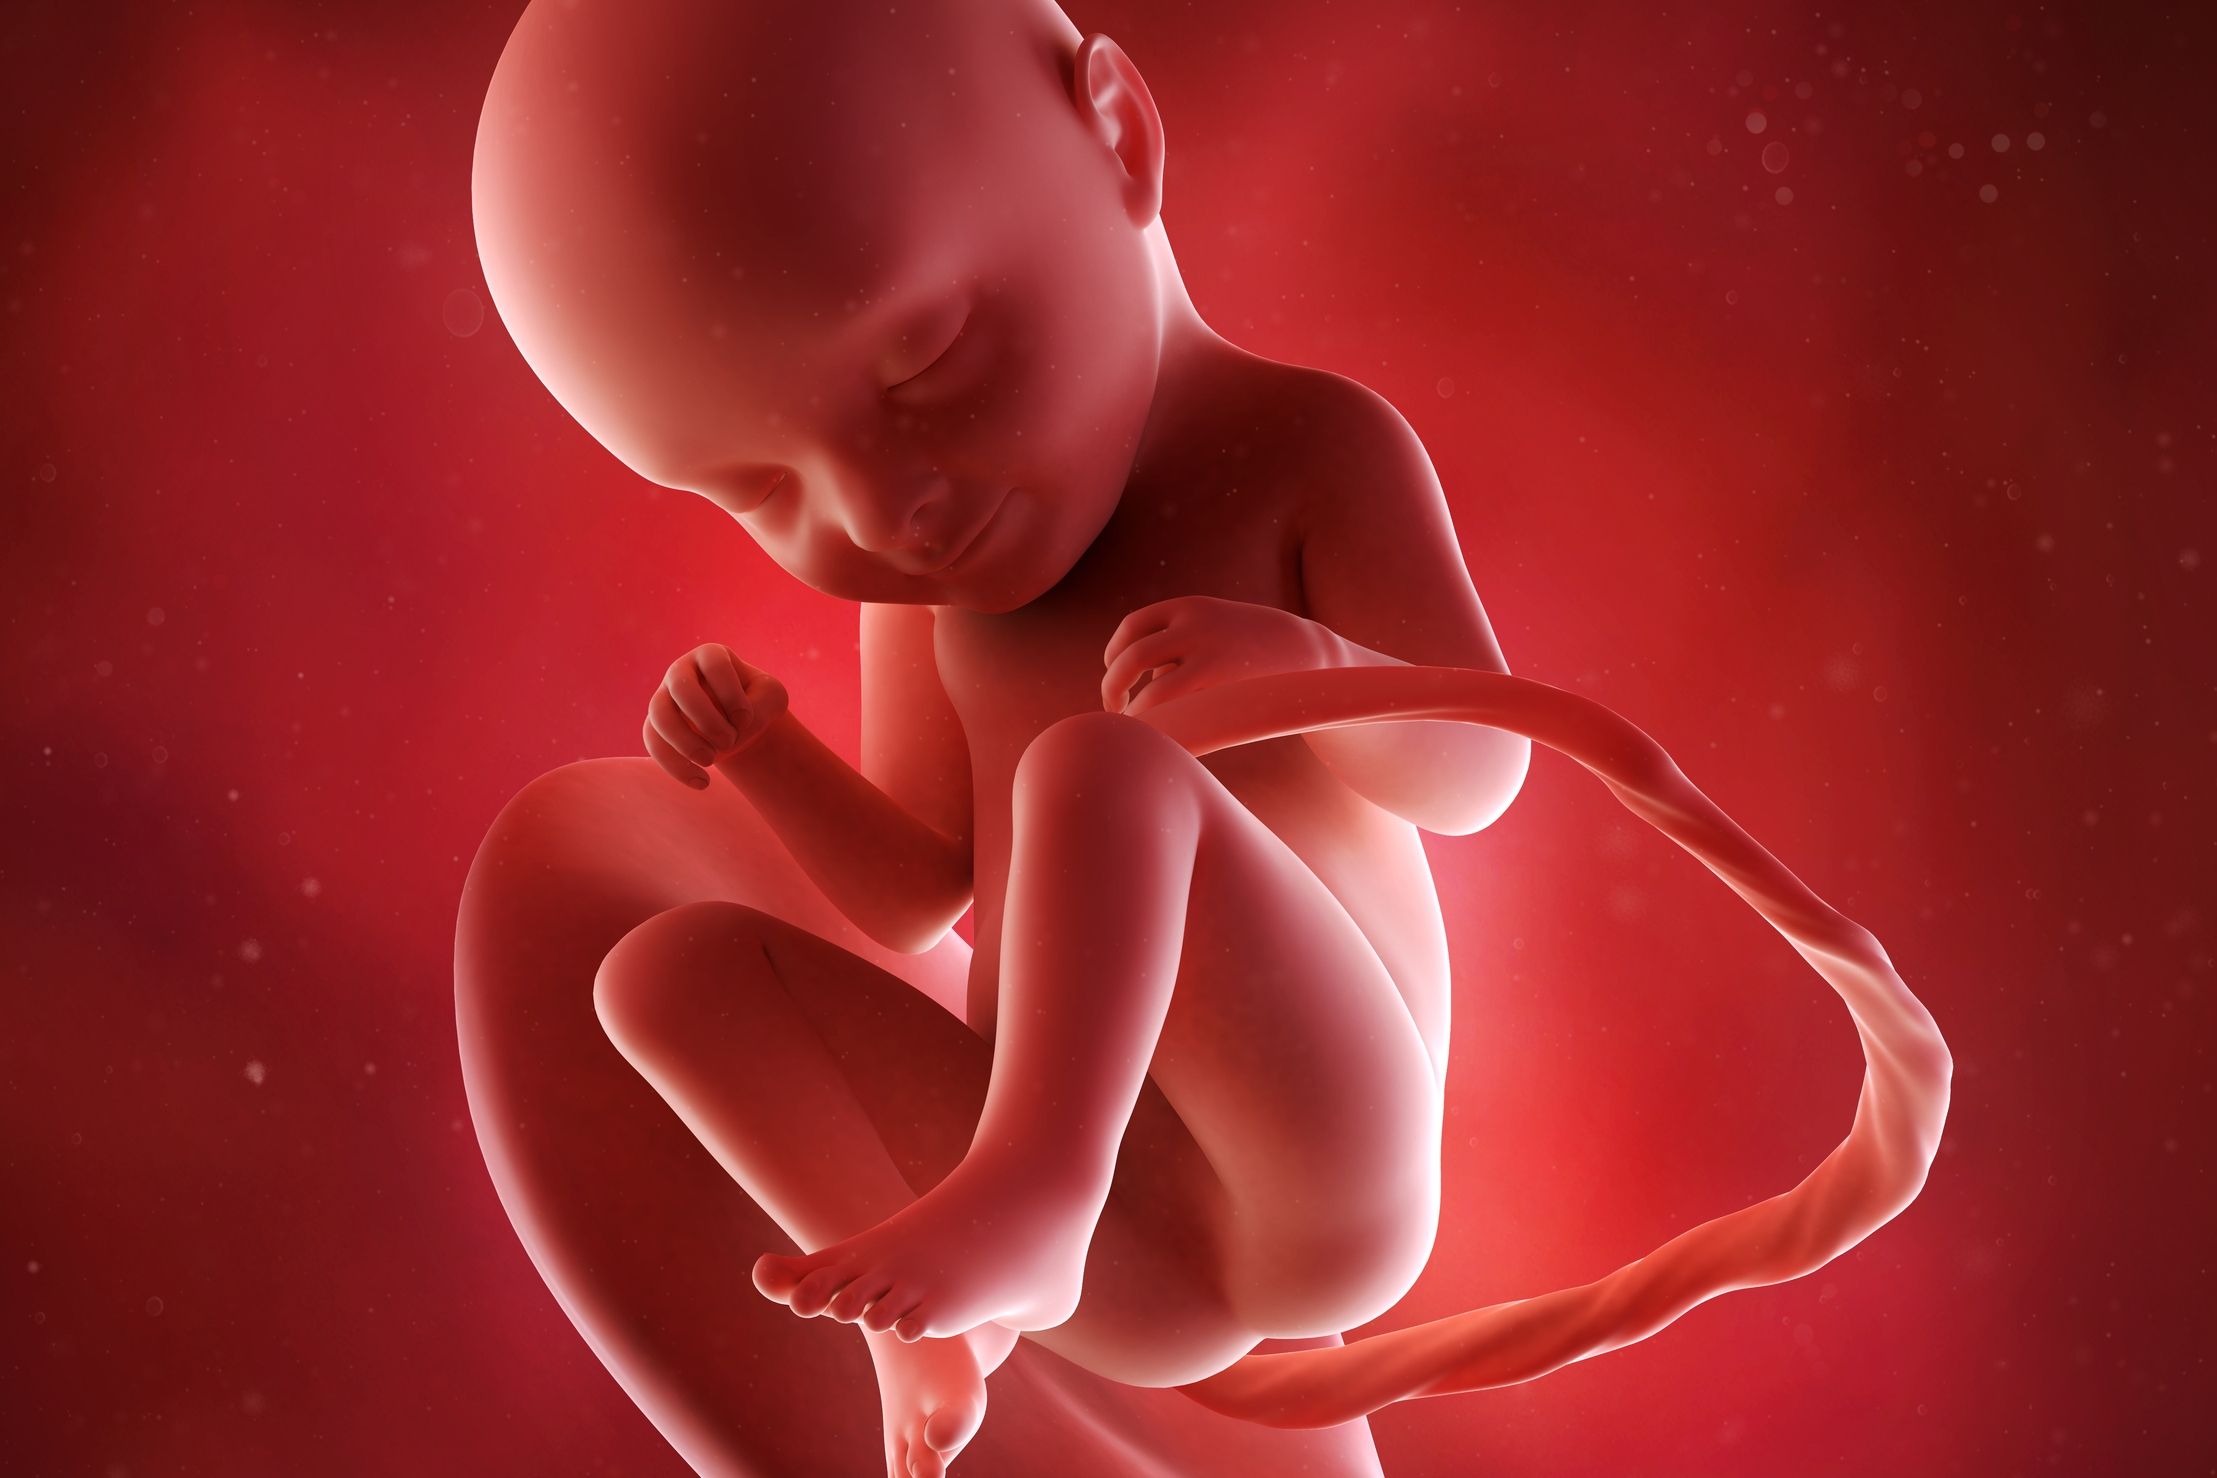 Bébé 3 mois : quels changements au bout de trois mois de vie ?